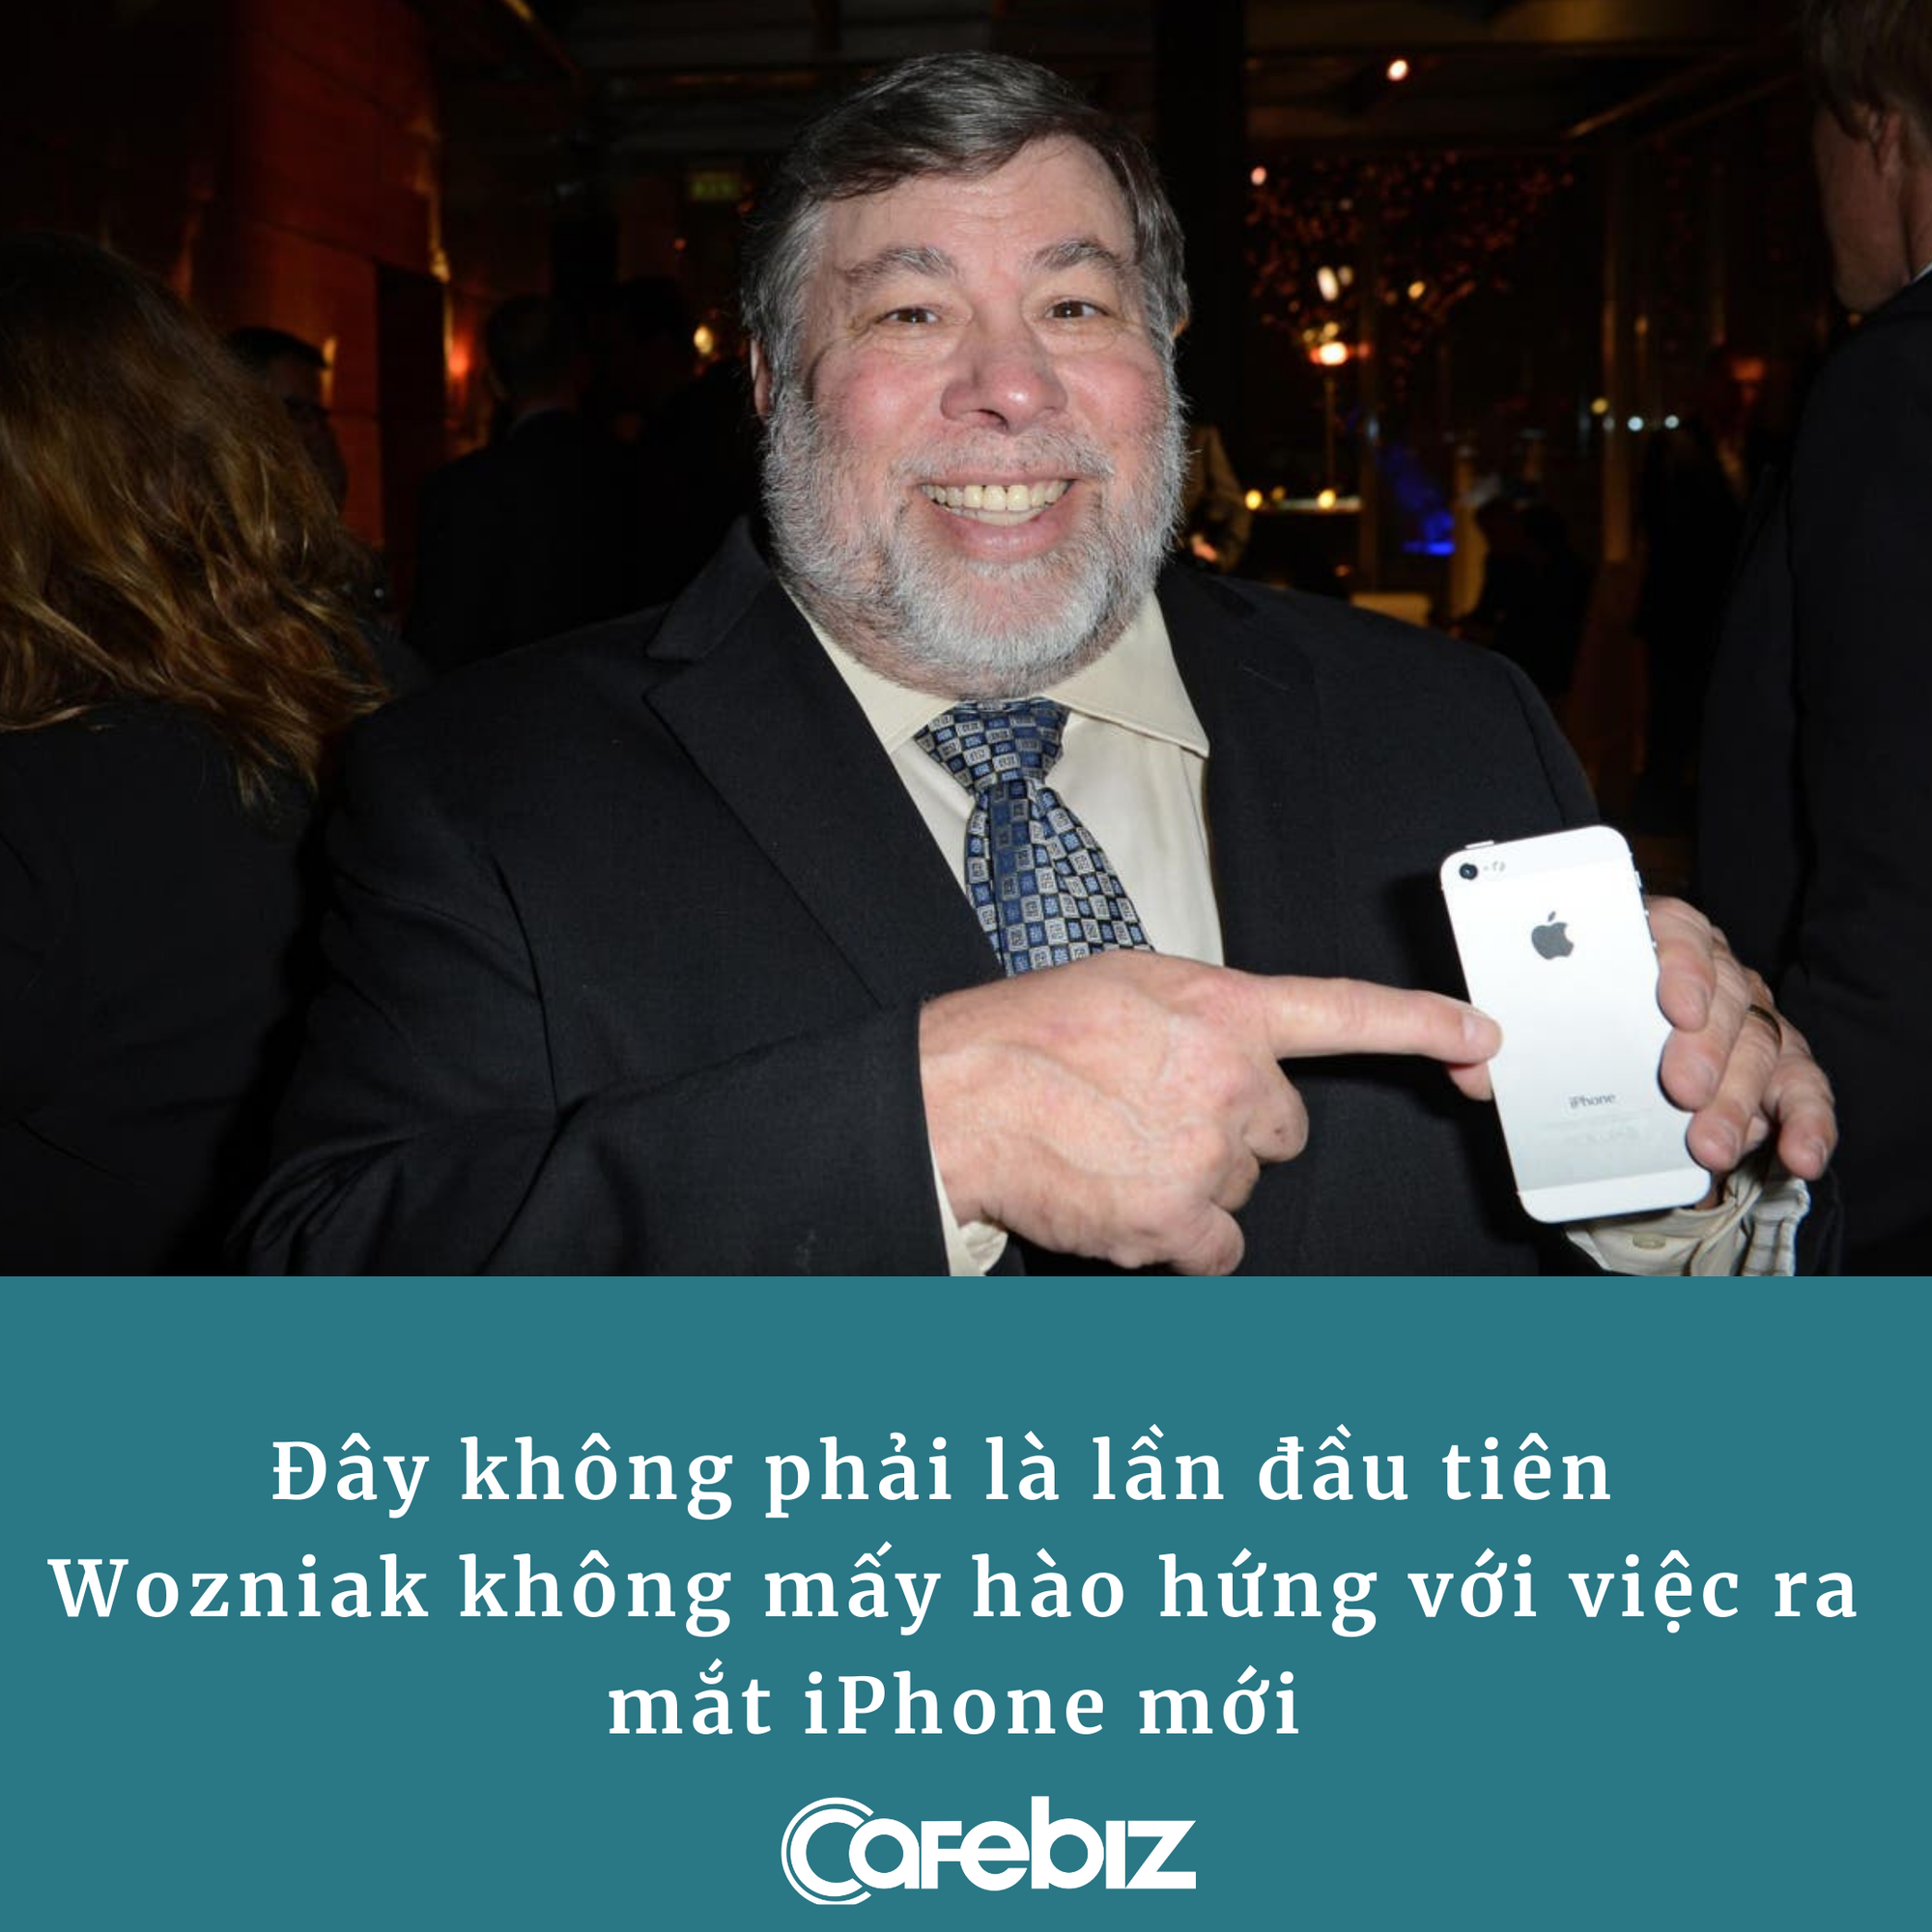 Đồng sáng lập Apple: ‘Tôi chẳng thấy iPhone 13 có gì khác’ - Ảnh 1.